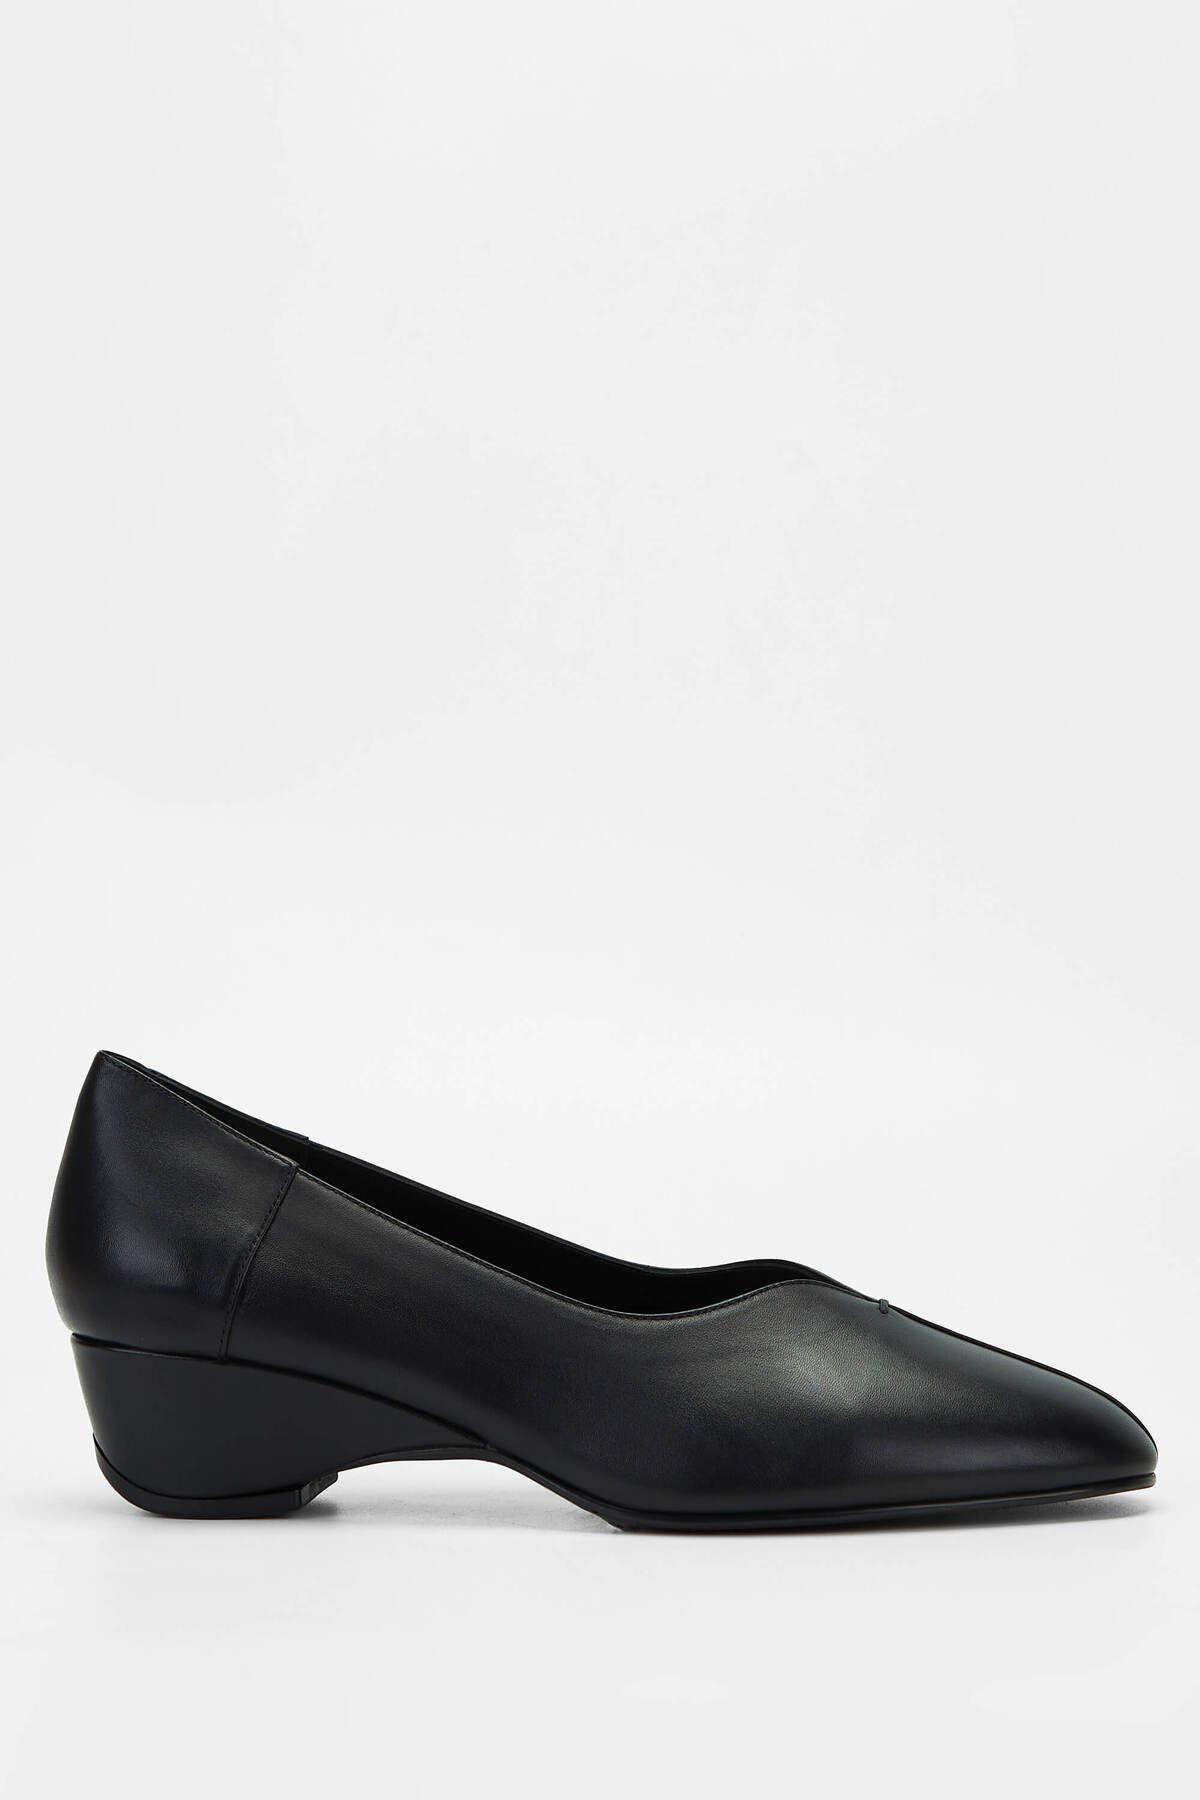 Tamer Tanca Kadın Hakiki Deri Siyah Deri Klasik Ayakkabı